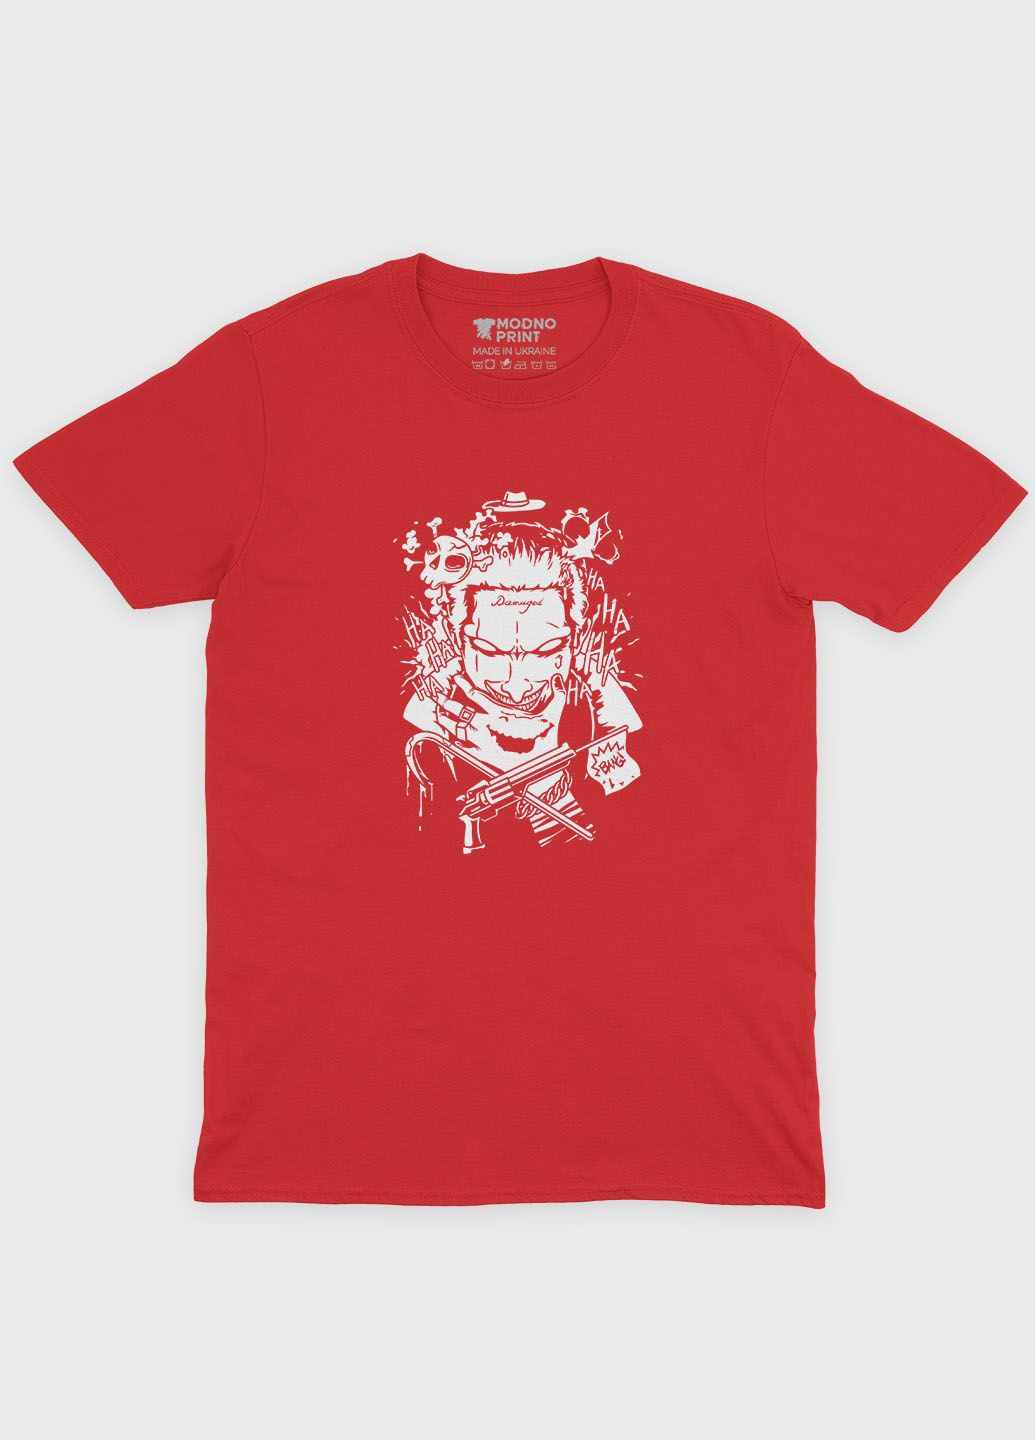 Червона демісезонна футболка для дівчинки з принтом суперзлодія - джокер (ts001-1-sre-006-005-016-g) Modno